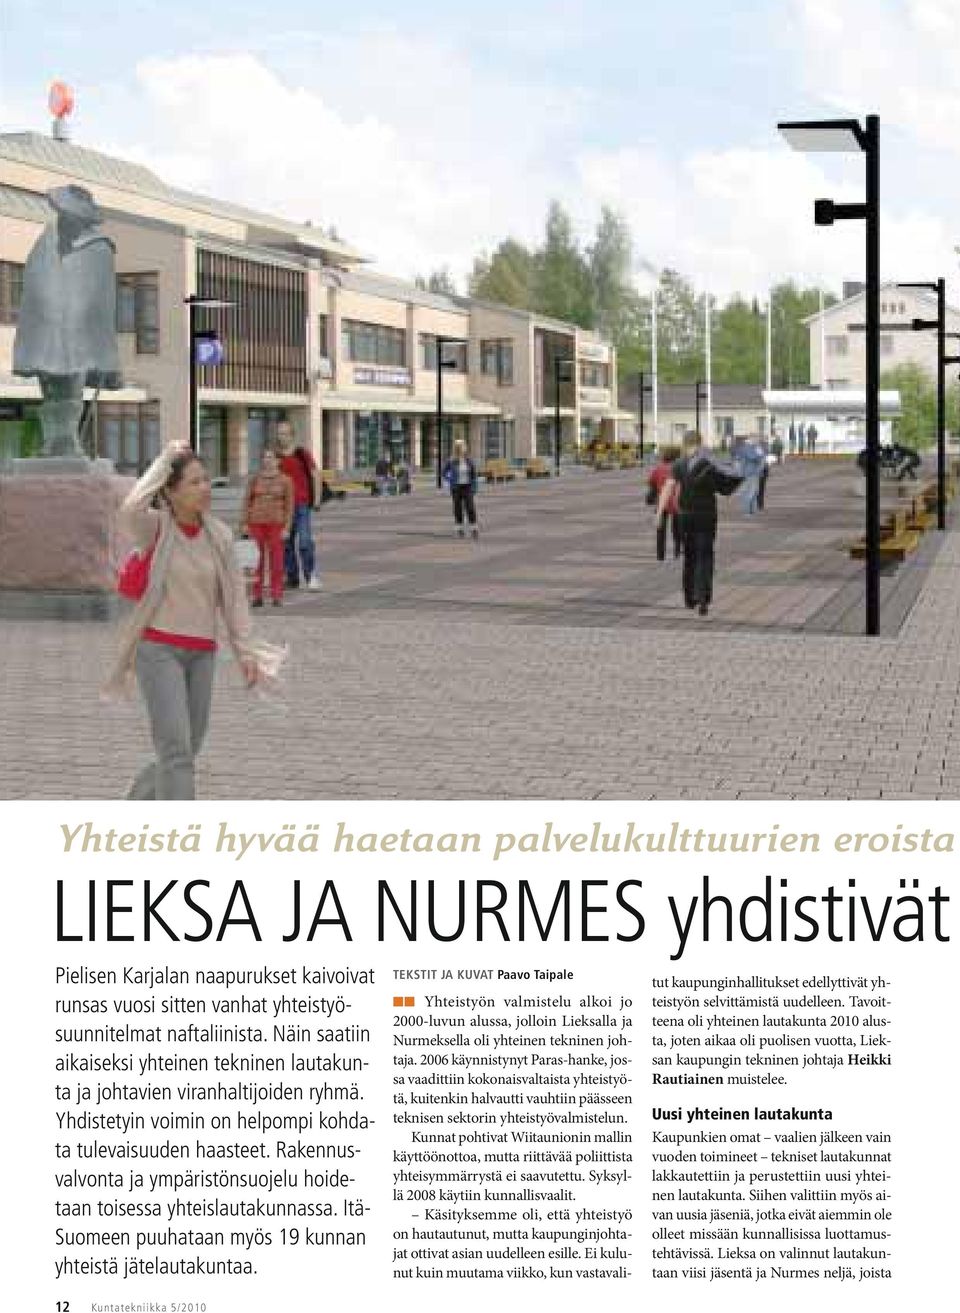 Rakennusvalvonta ja ympäristönsuojelu hoidetaan toisessa yhteislautakunnassa. Itä- Suomeen puuhataan myös 19 kunnan yhteistä jätelautakuntaa.